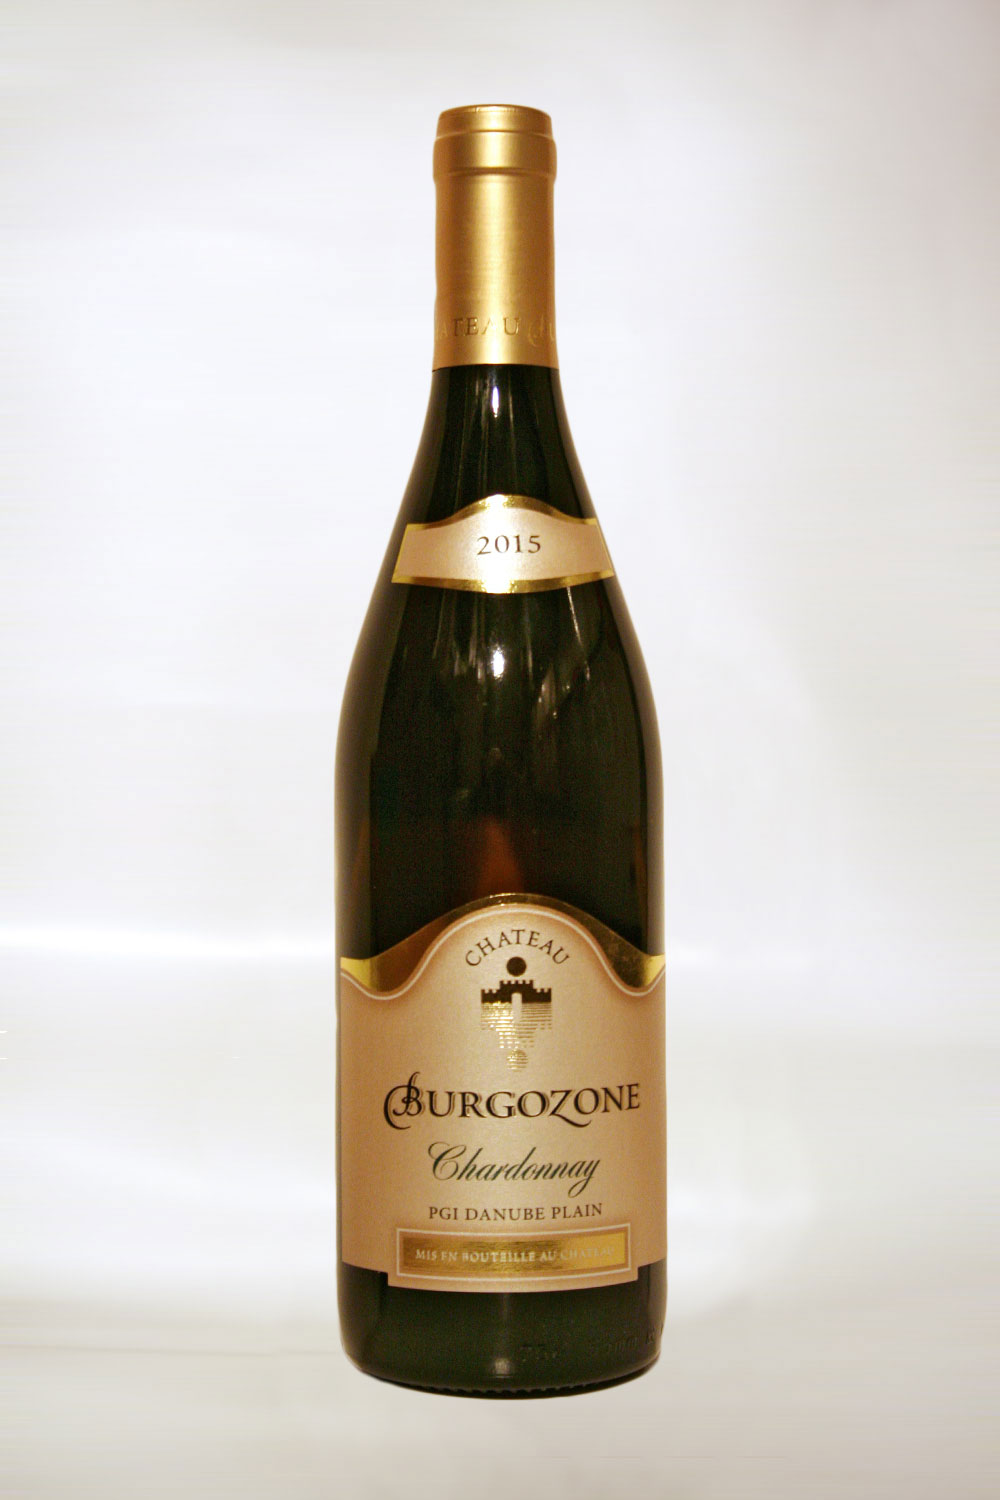 Chateau Burgozone Chardonnay 2015